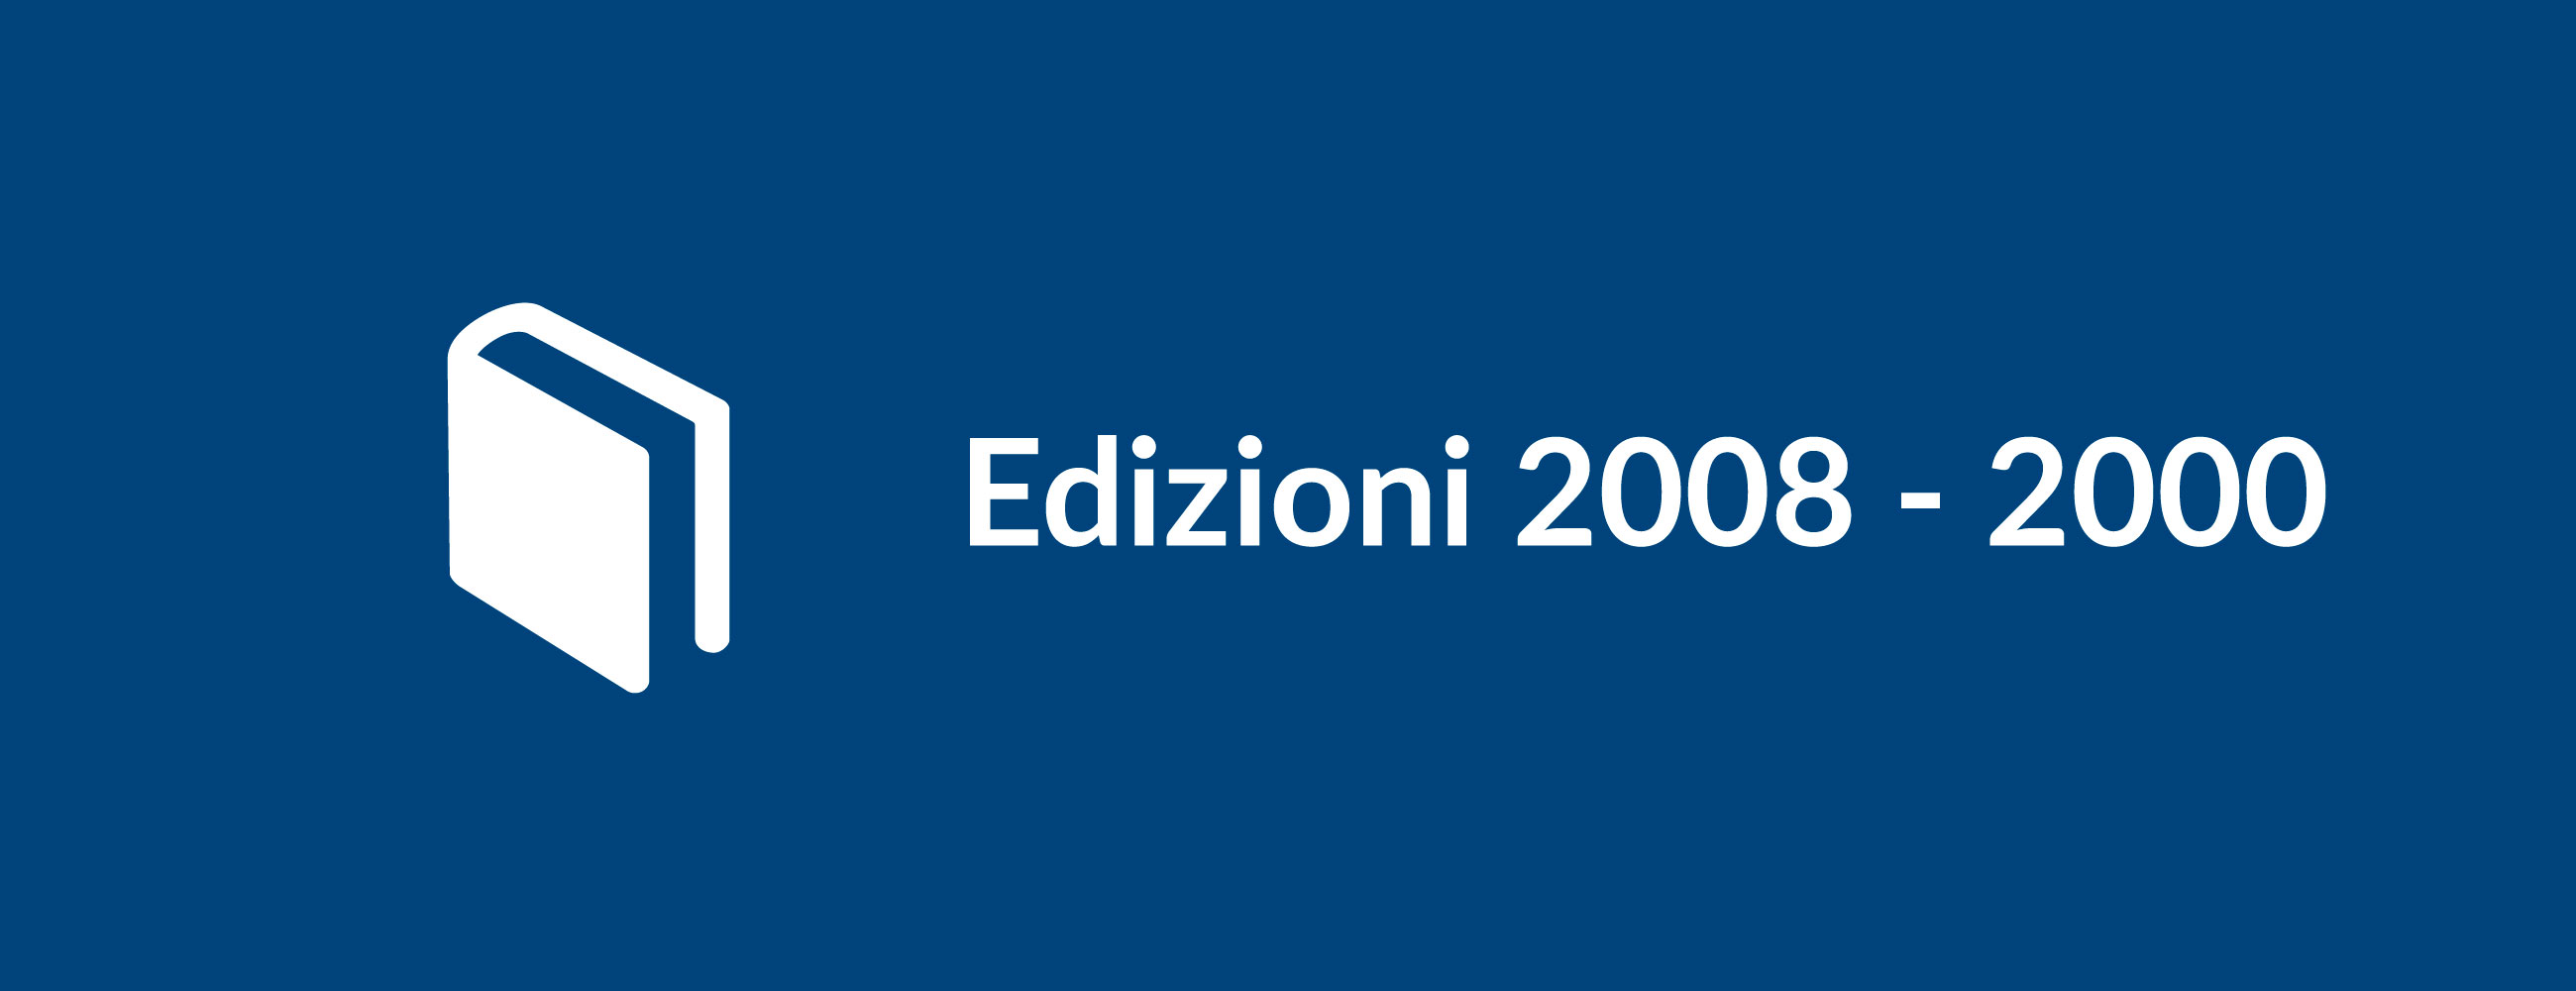 Edizioni 2008-2000